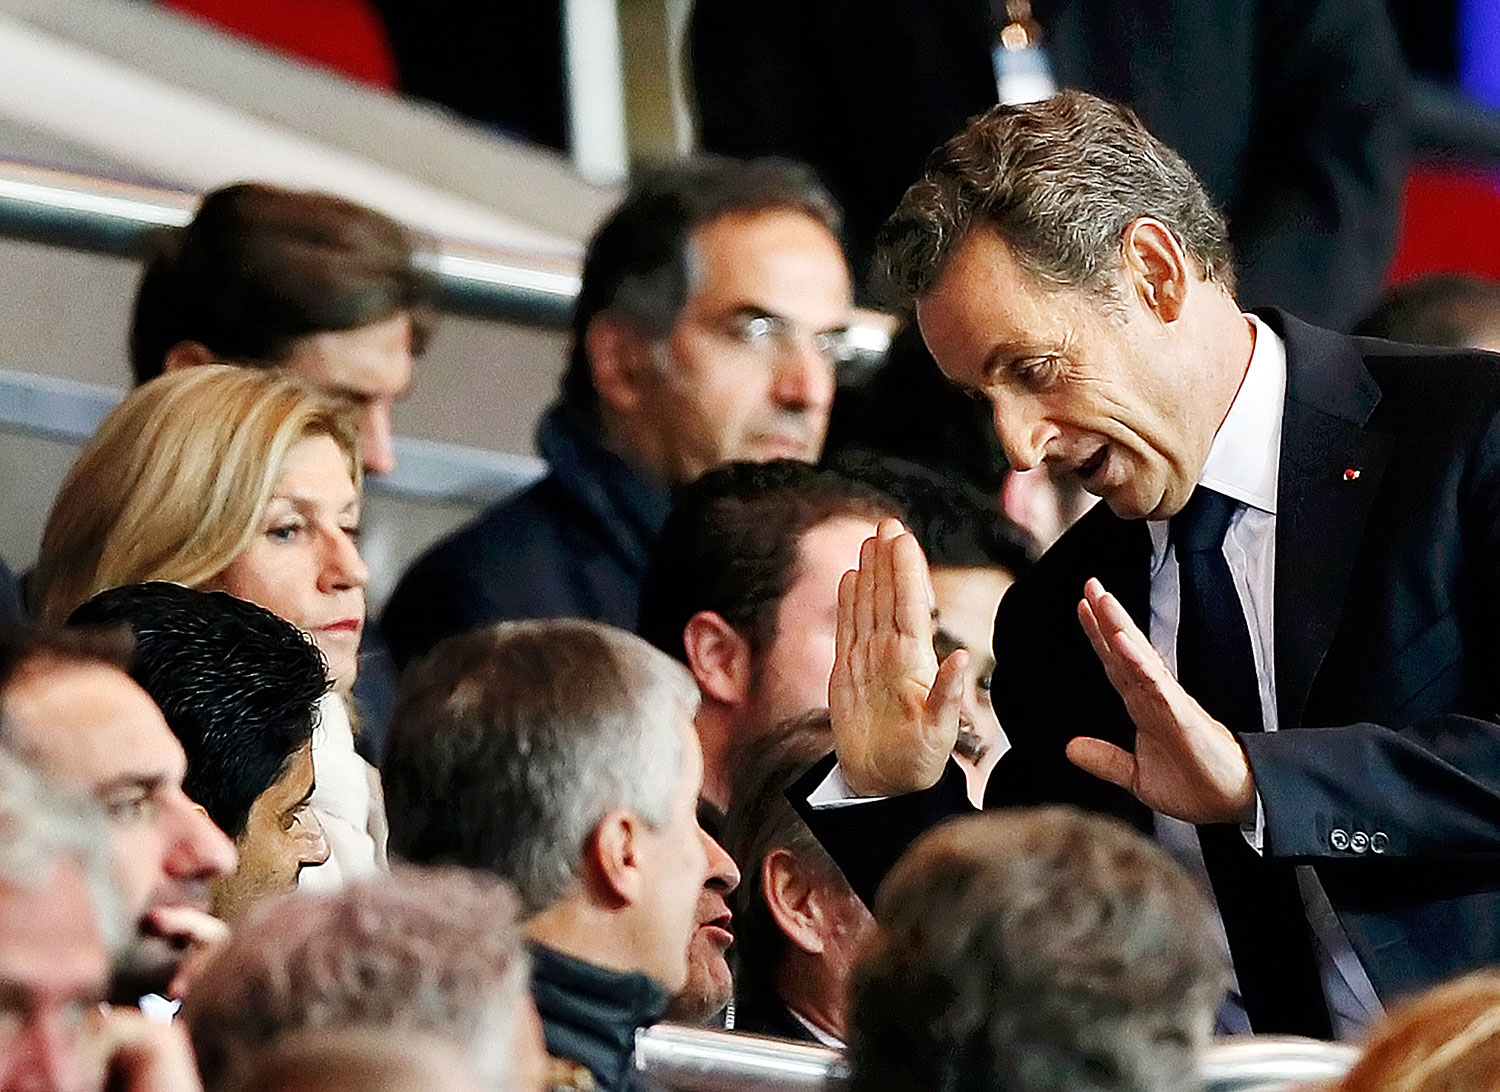 Politika és labdarúgás. Nicolas Sarkozy a Paris St. Germain–Lyon bajnoki meccsen, a visszatérését bejelentő tévéinterjú után